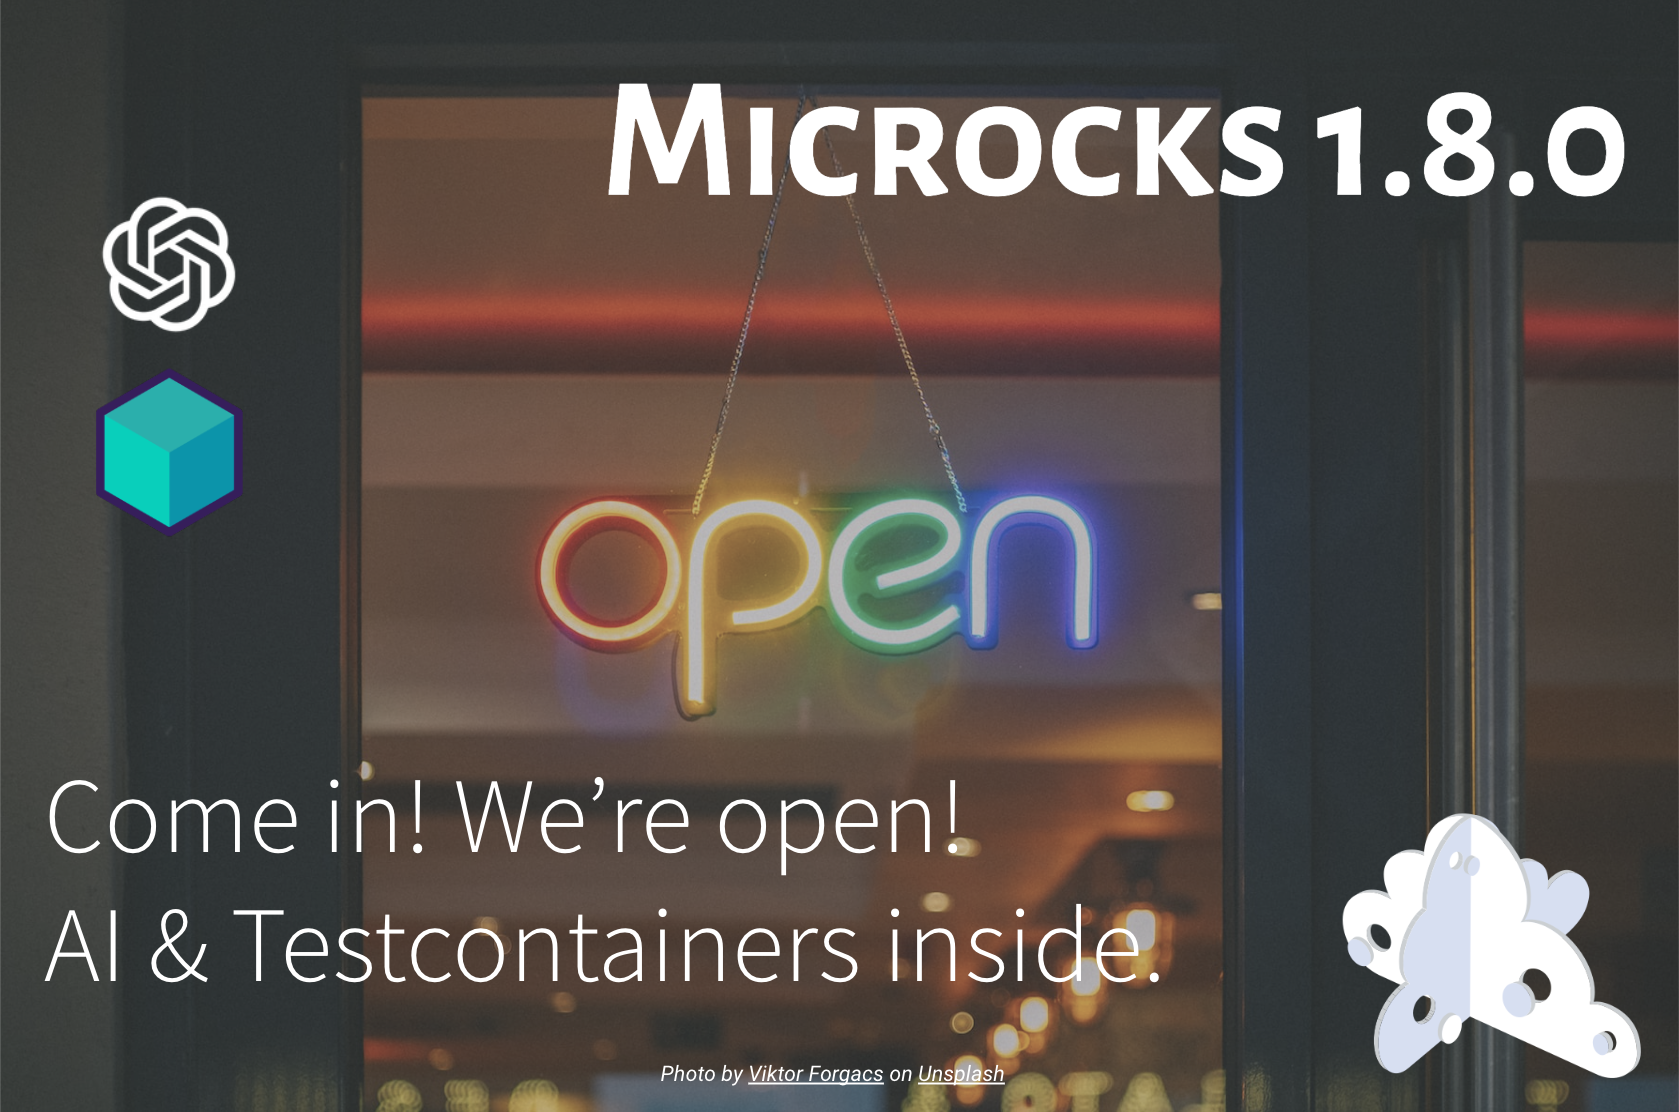 Microcks 1.8.0 release 🚀